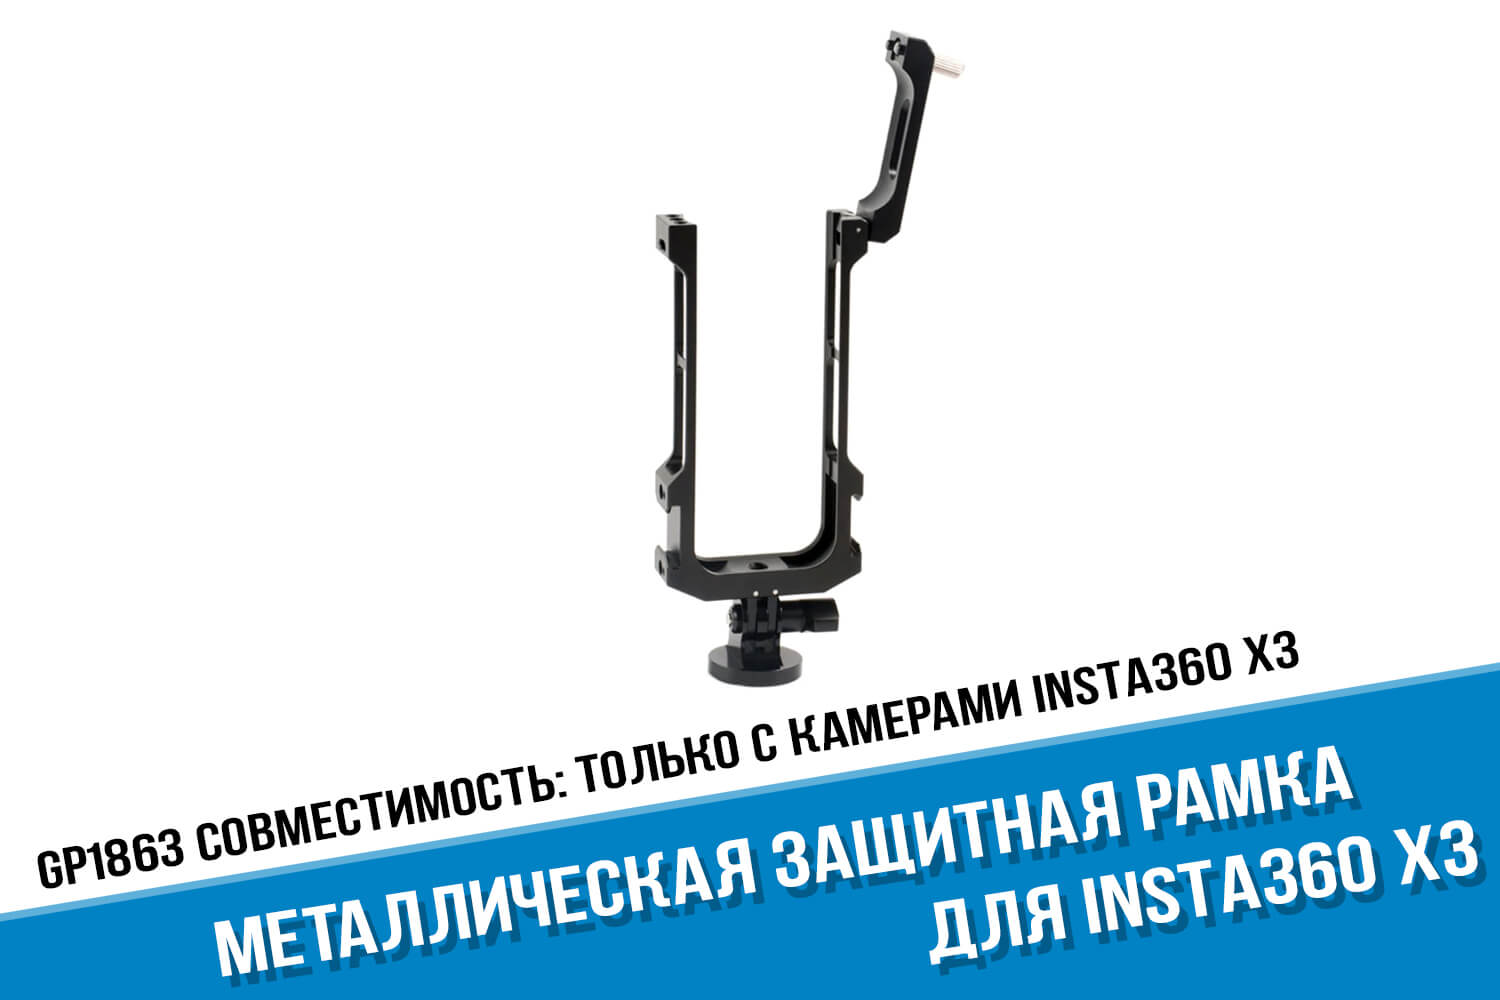 Прочная металлическая рамка камеры Insta360 One X3